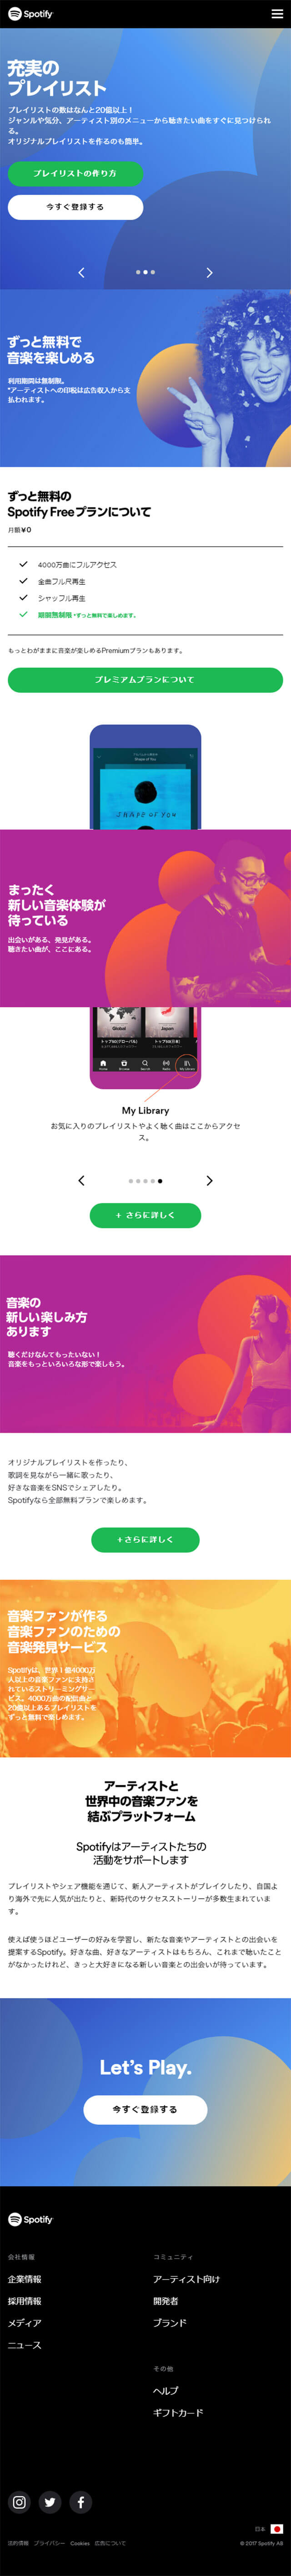 音楽発見サービス - Spotify_sp_1